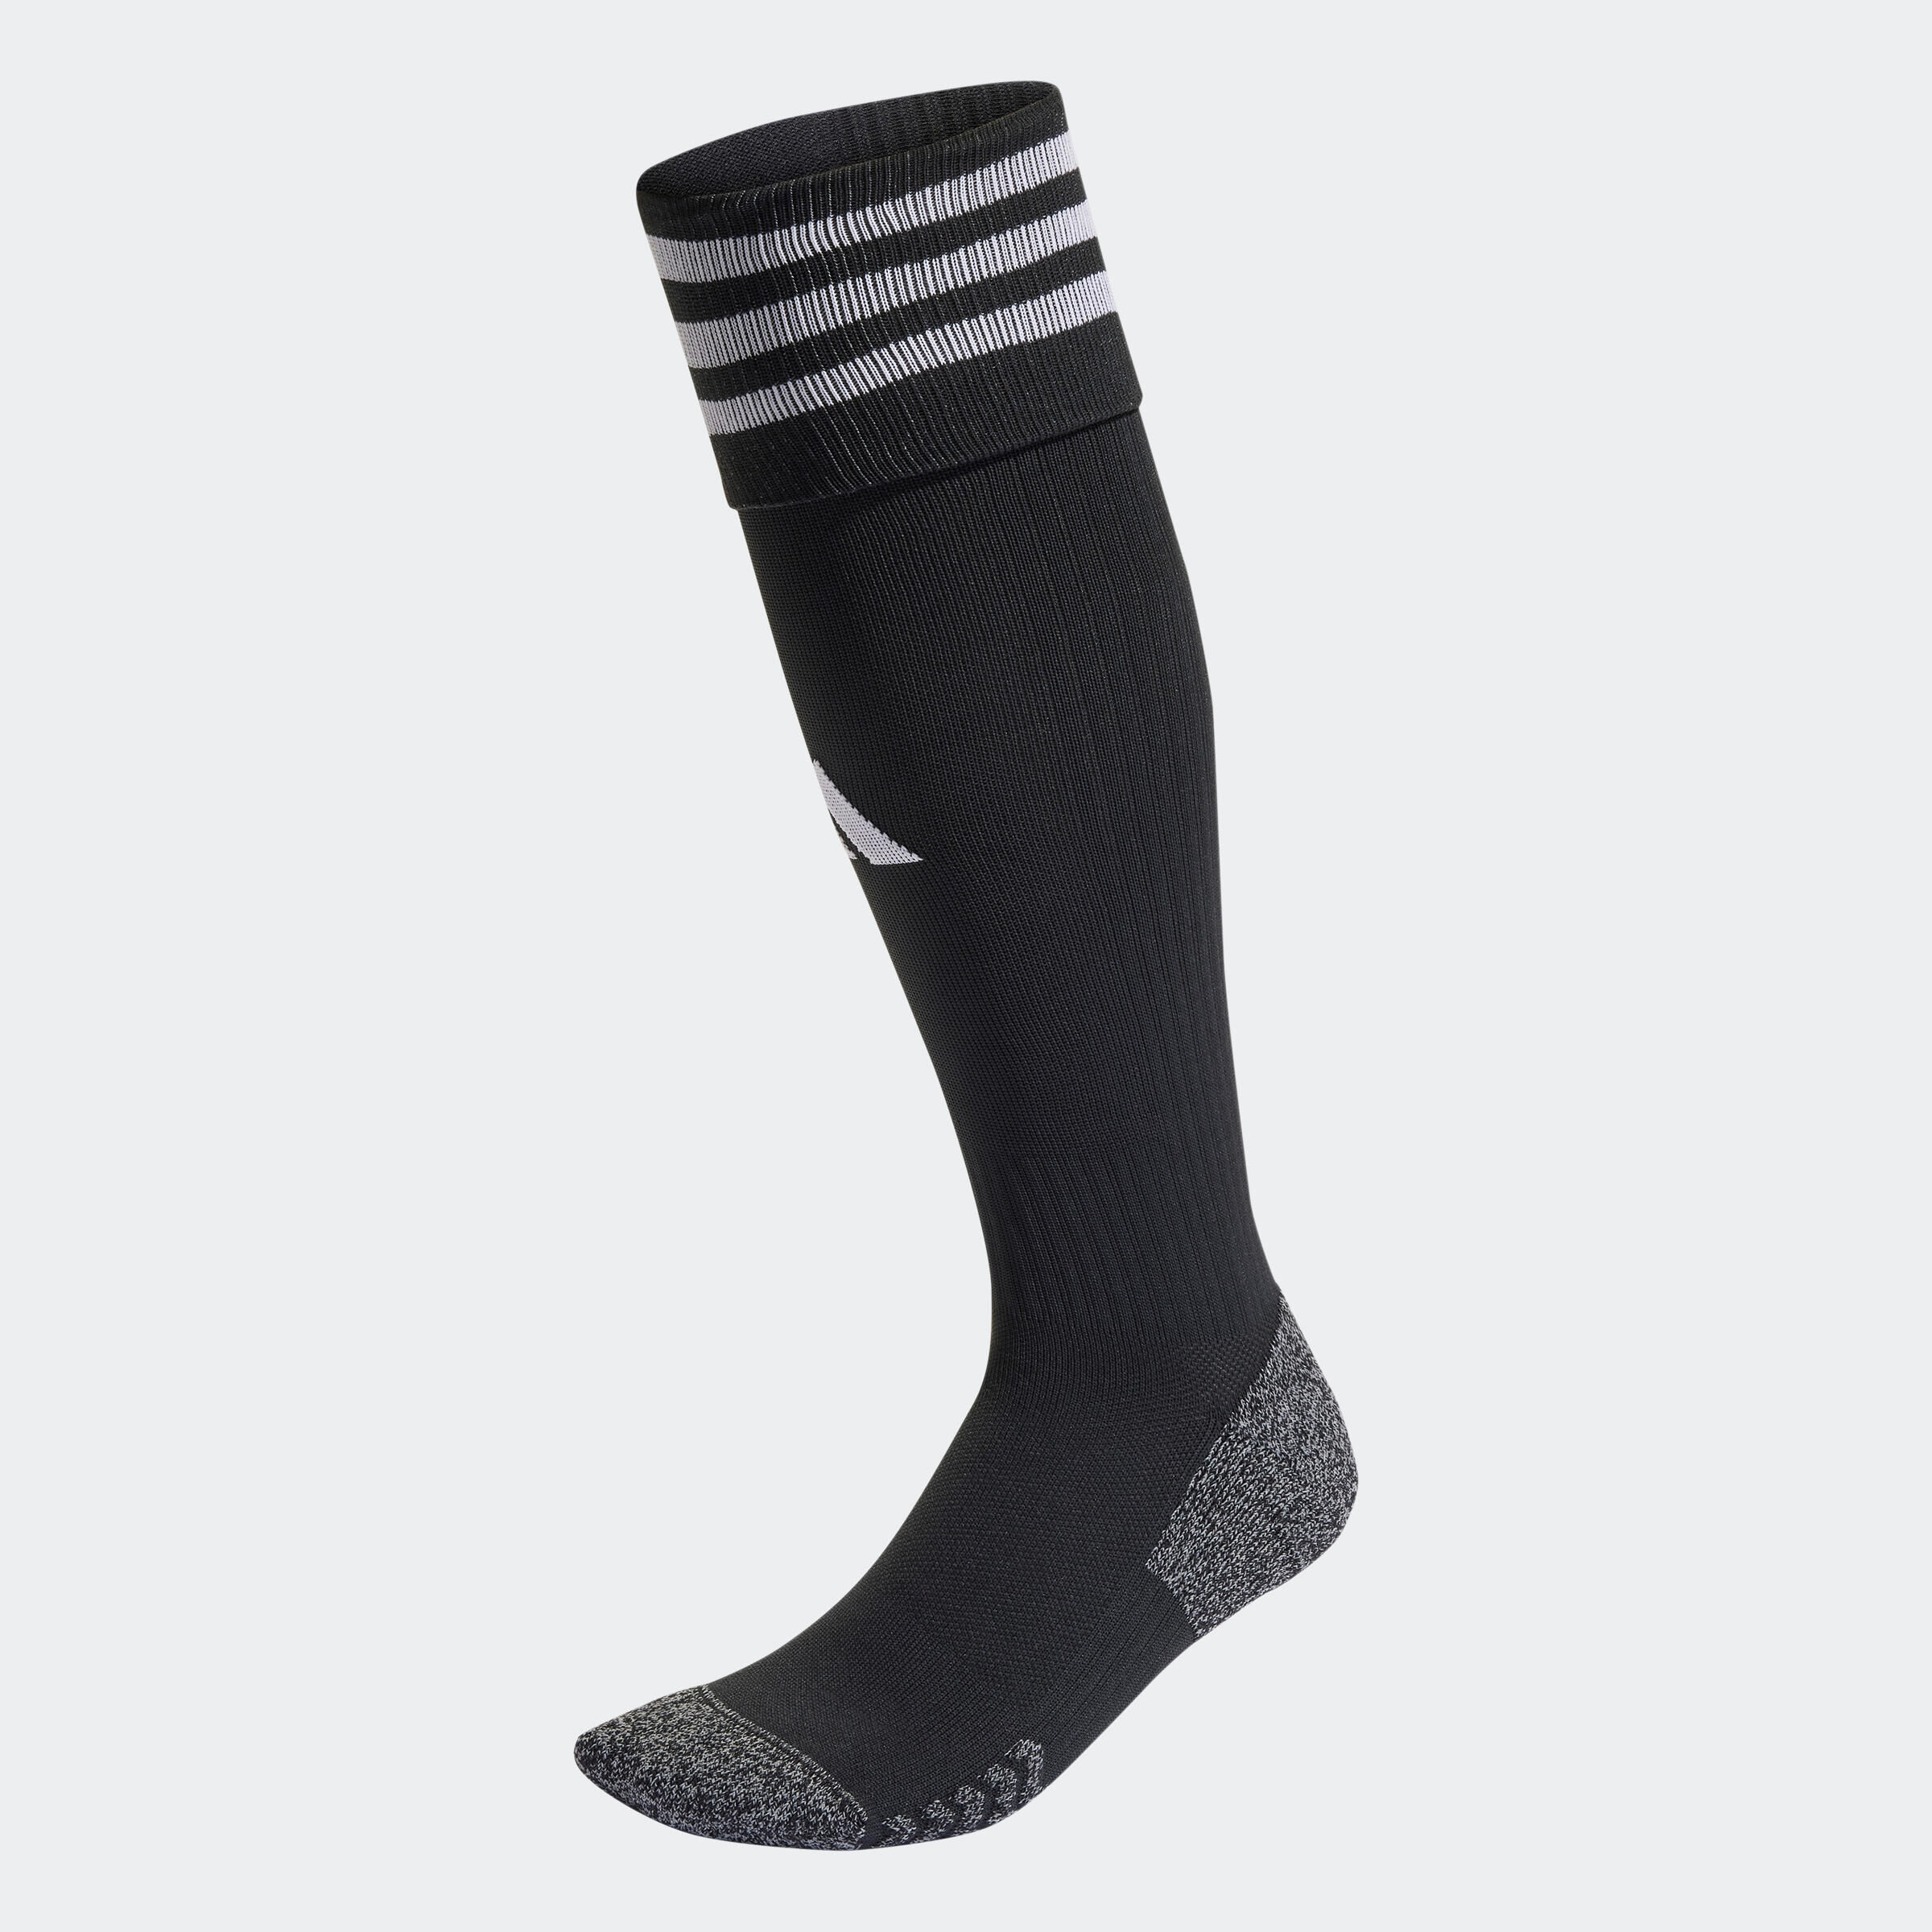 ADIDAS Adult Football Socks - Black